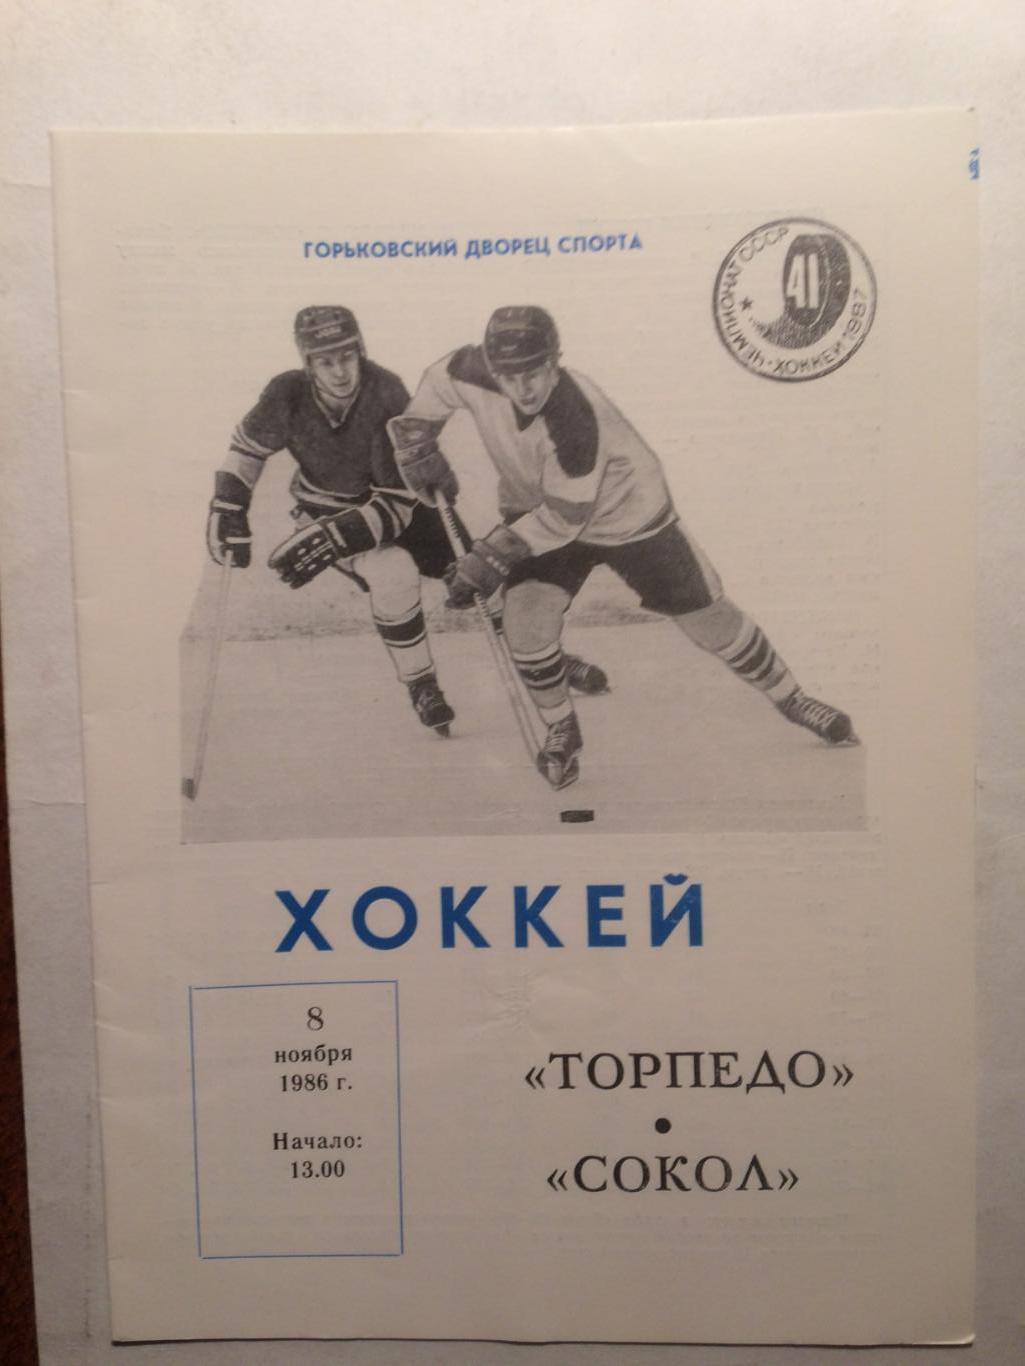 Хоккей Торпедо Горький - Сокол Киев 08.11.1986